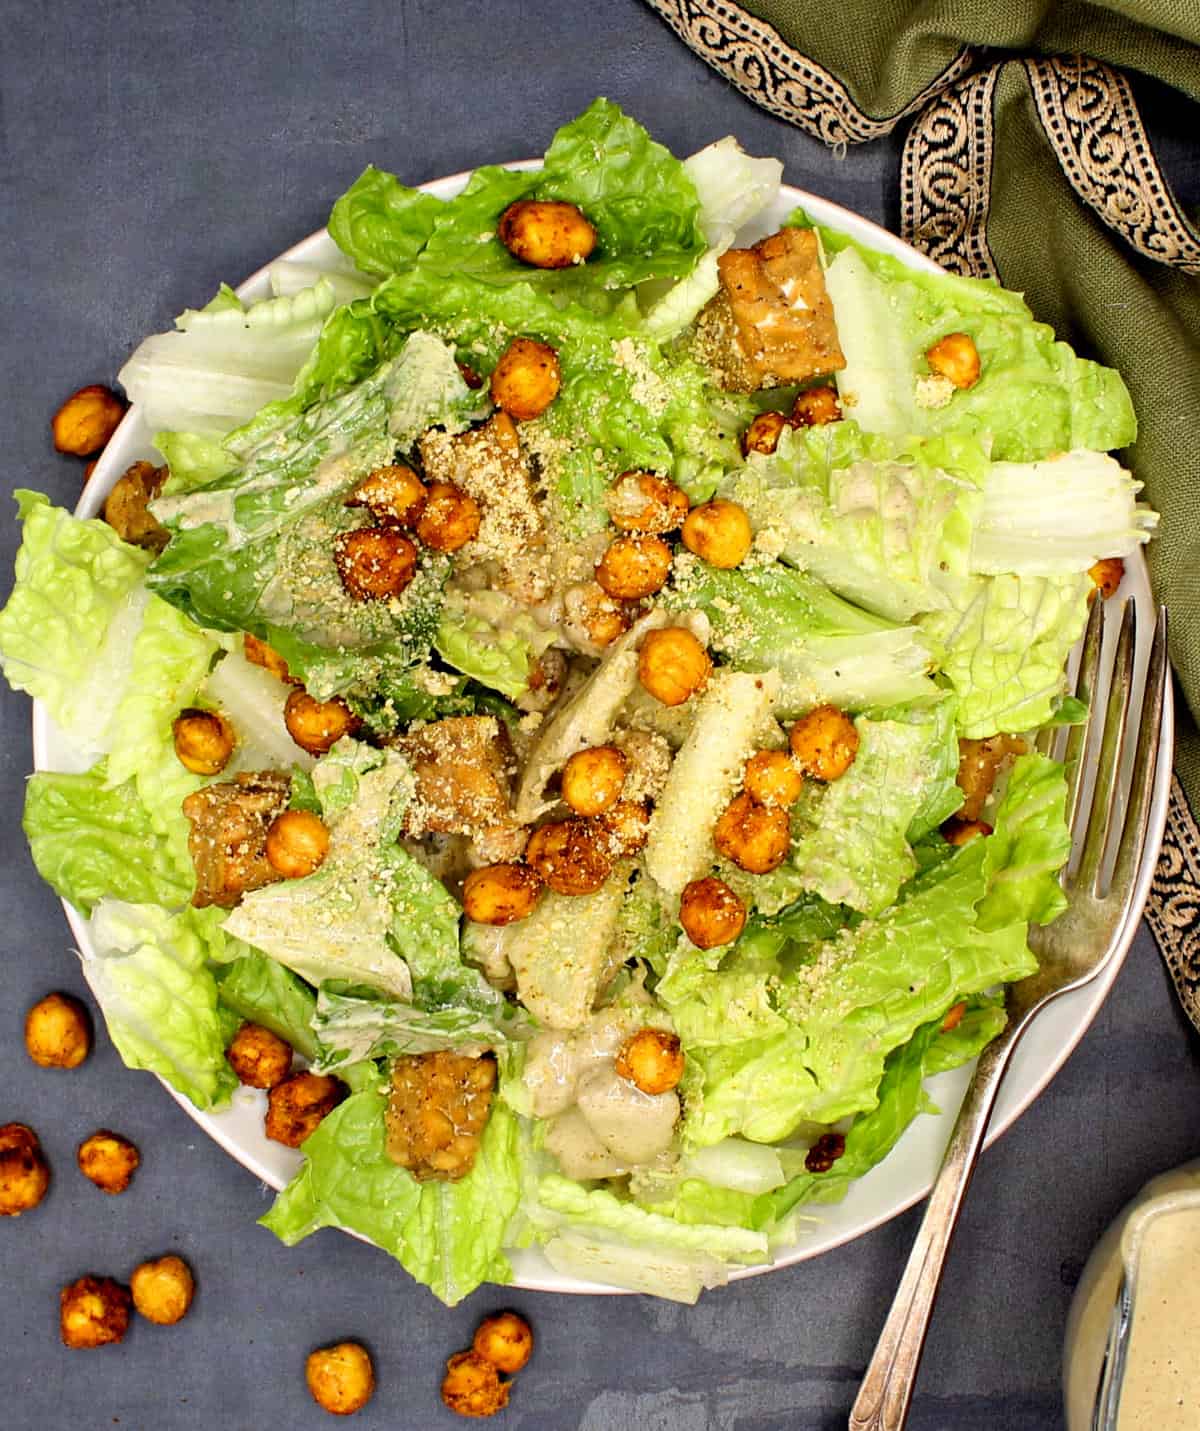 Une assiette blanche avec une salade César végétalienne à base de laitue romaine, de pois chiches, de tempeh et de parmesan végétalien.  Les pois chiches sont dispersés sur le côté,